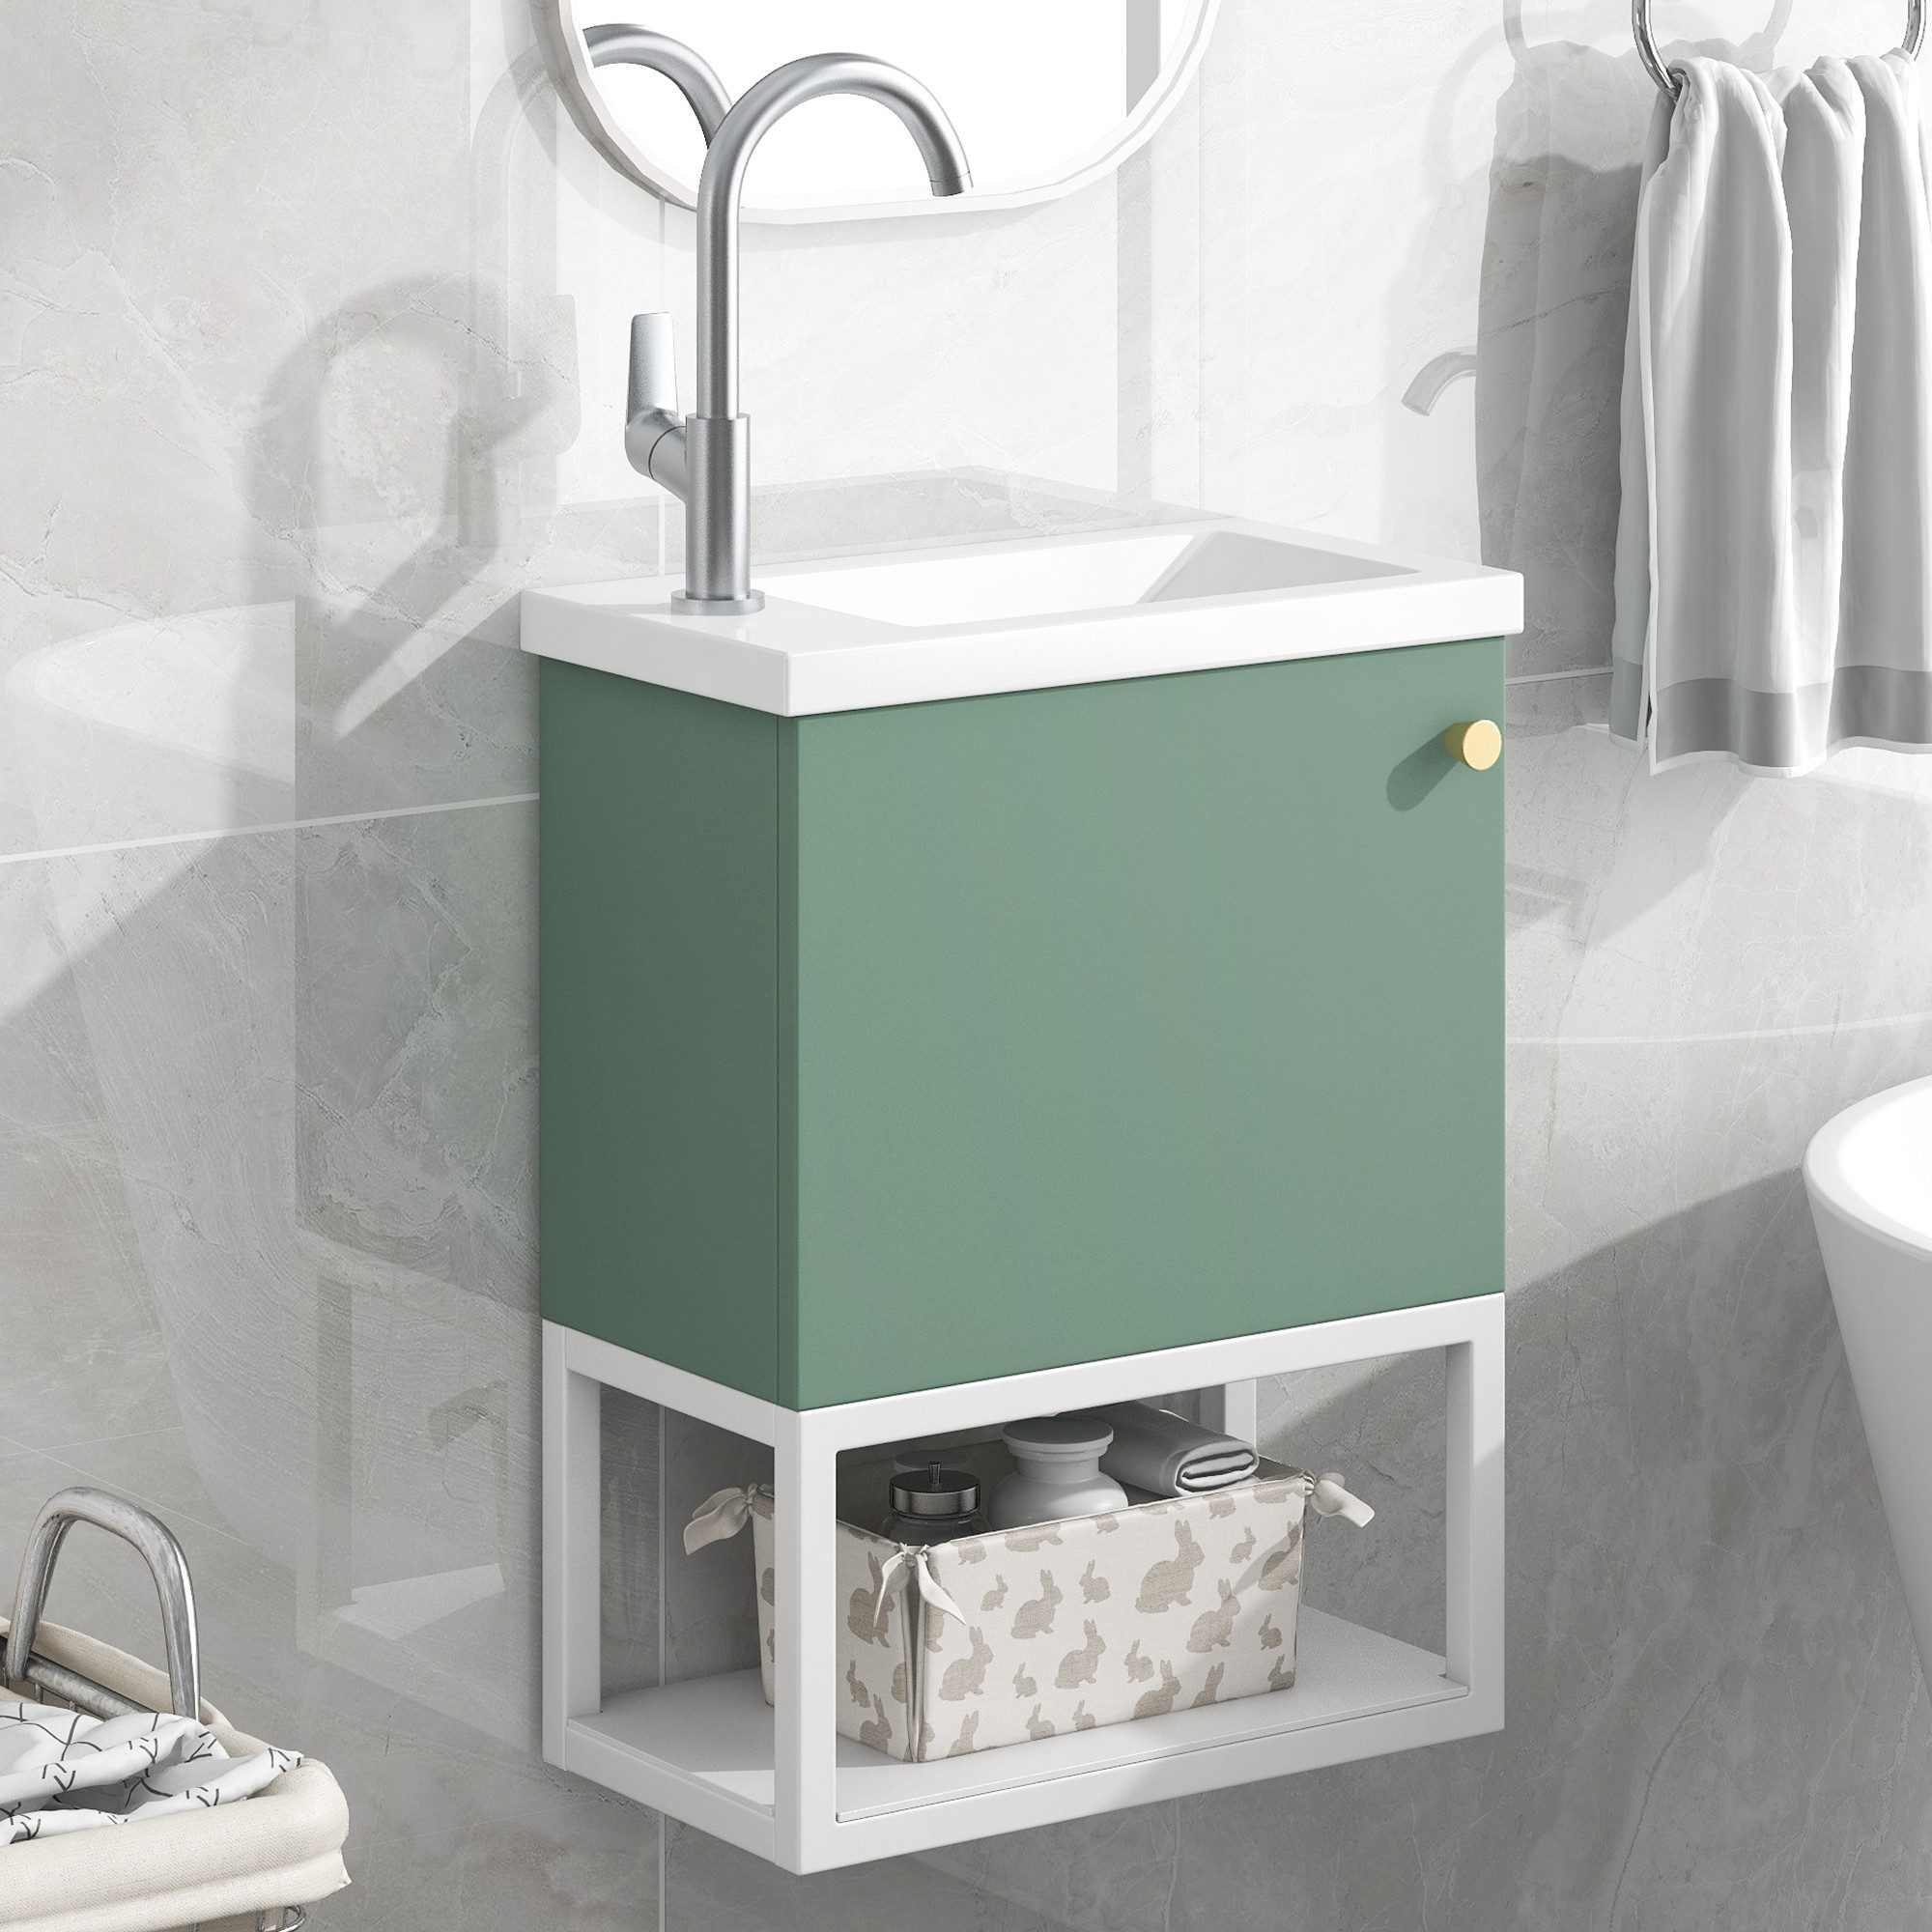 HT Waschbeckenunterschrank Waschbecken mit Unterschrank, Kleines Gäste WC Möbel, 39x21x50cm